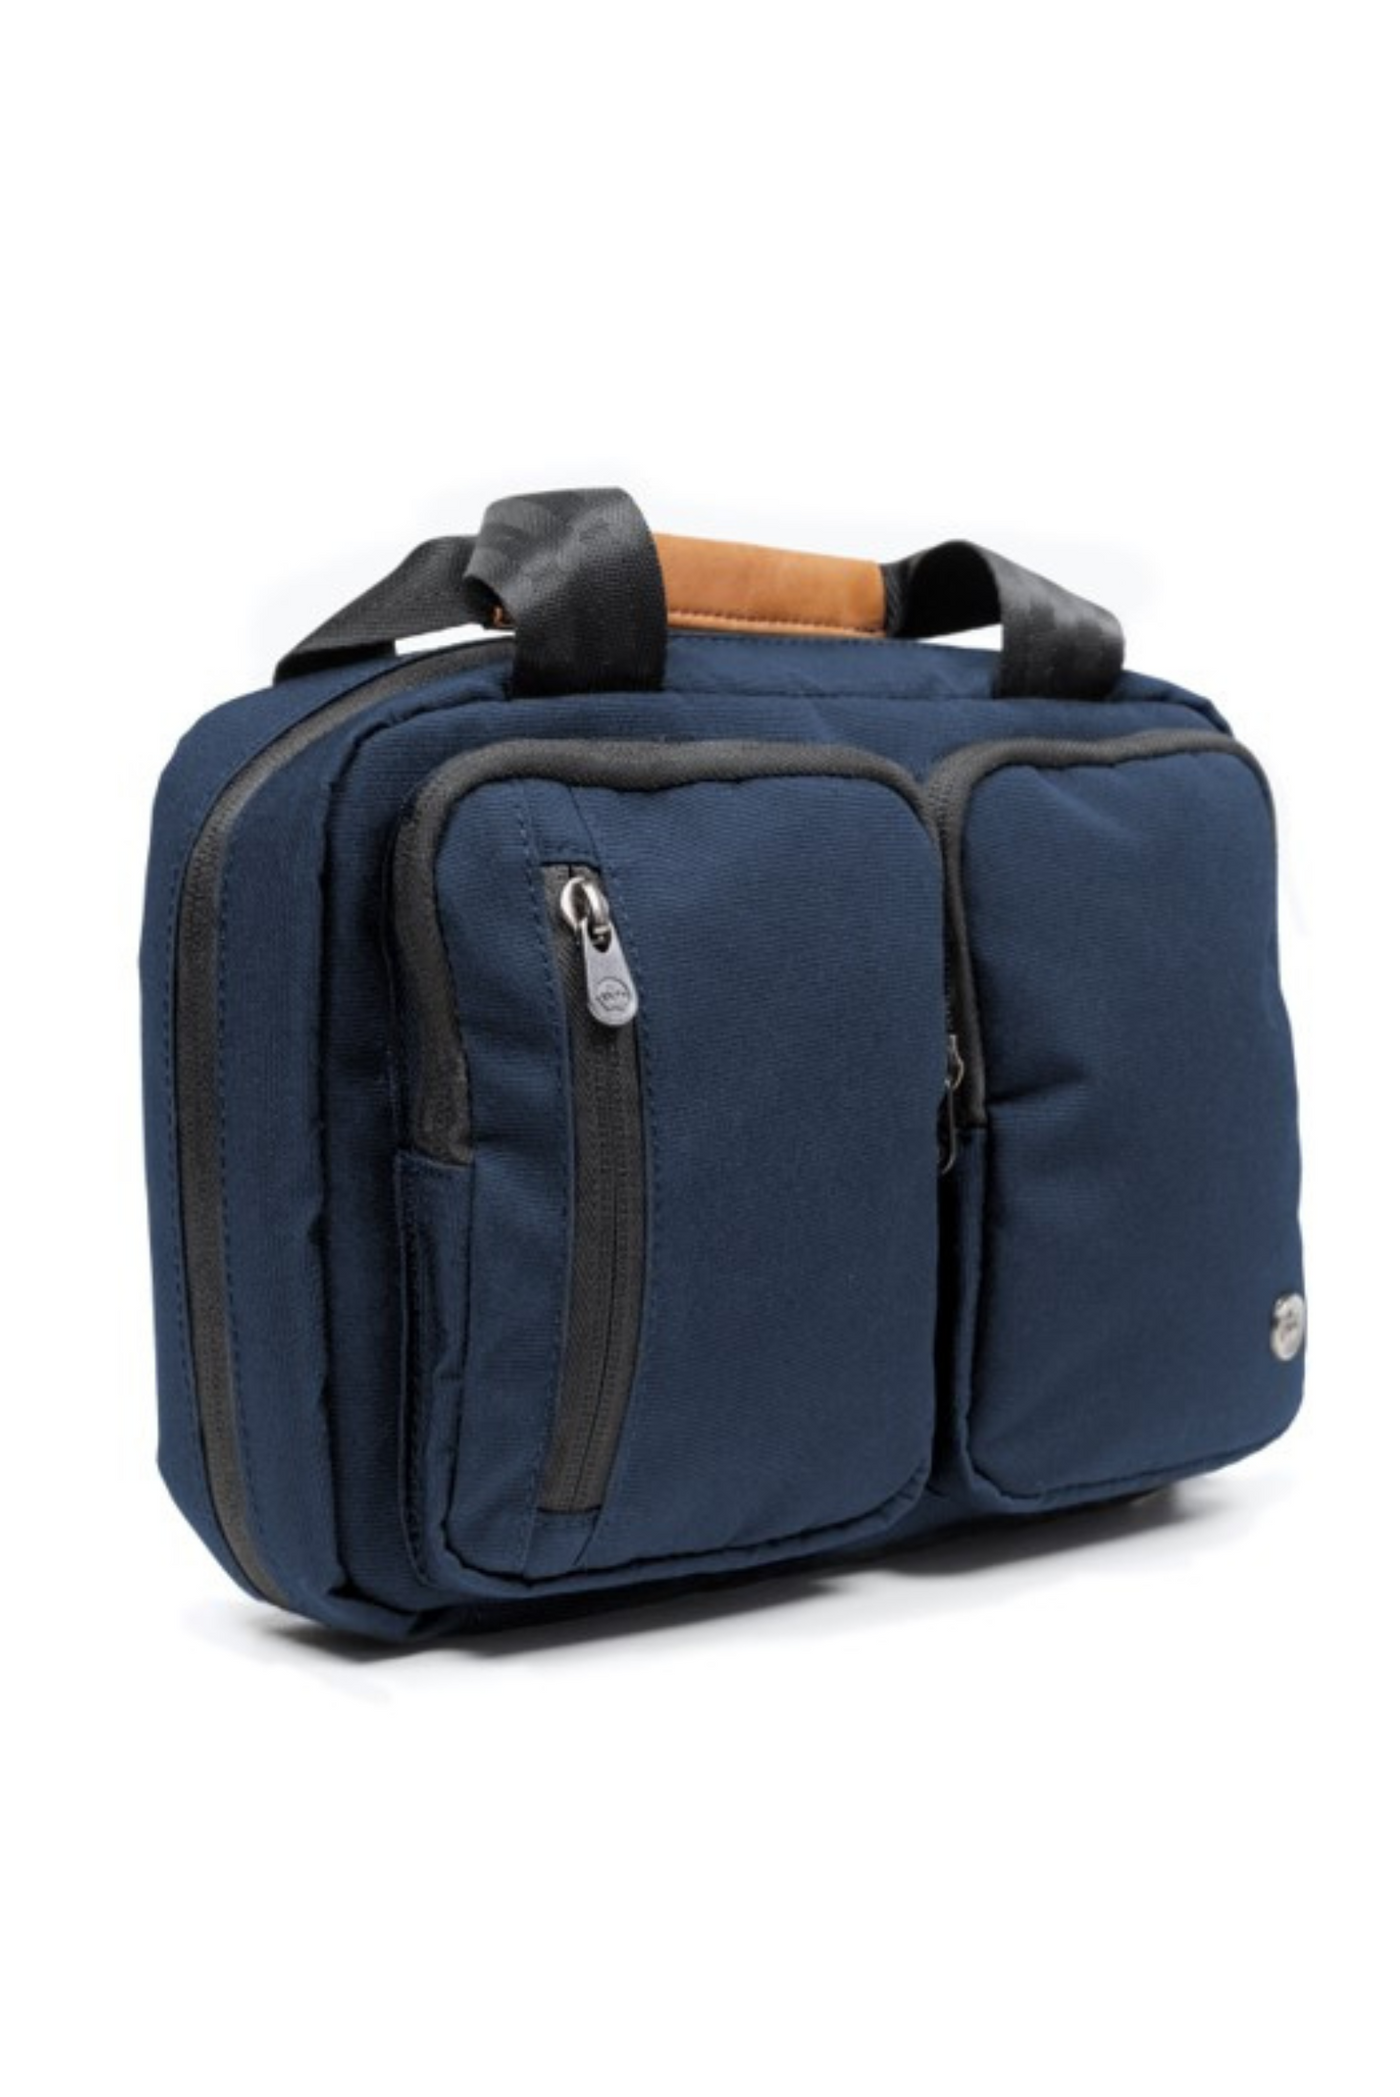 Simcoe Essentials Bag